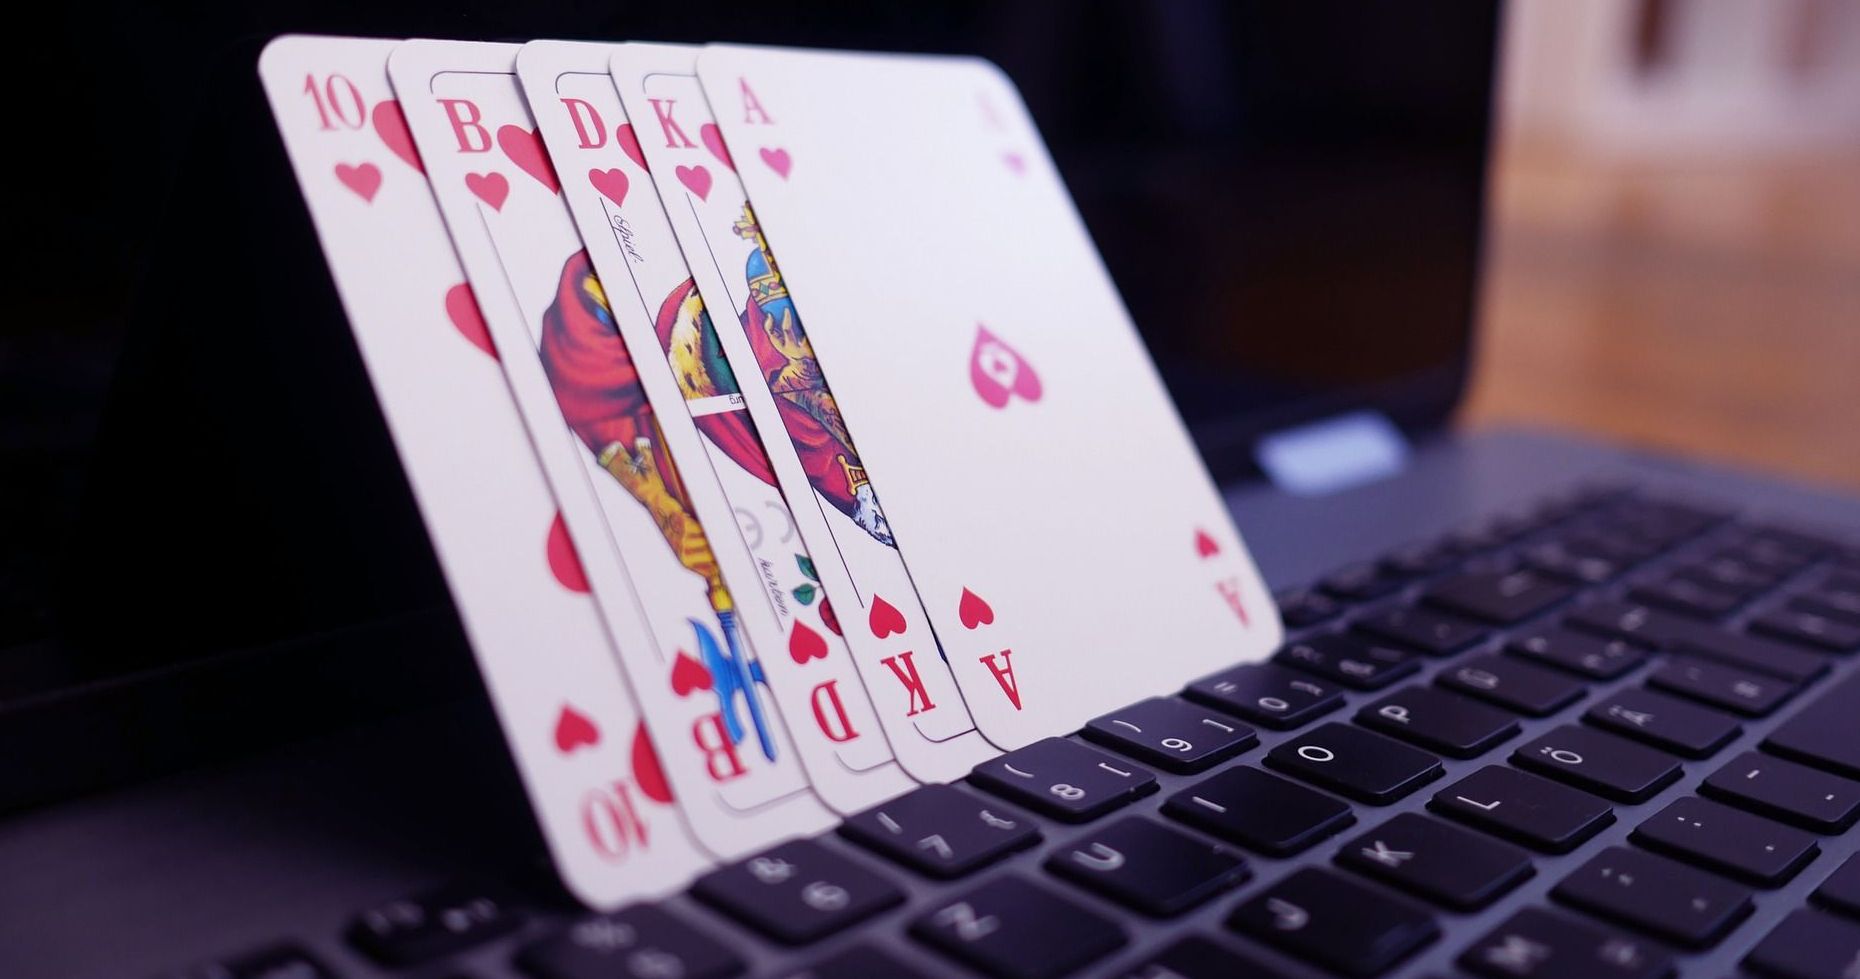 beste Online Casino Österreich: Eine unglaublich einfache Methode, die für alle funktioniert